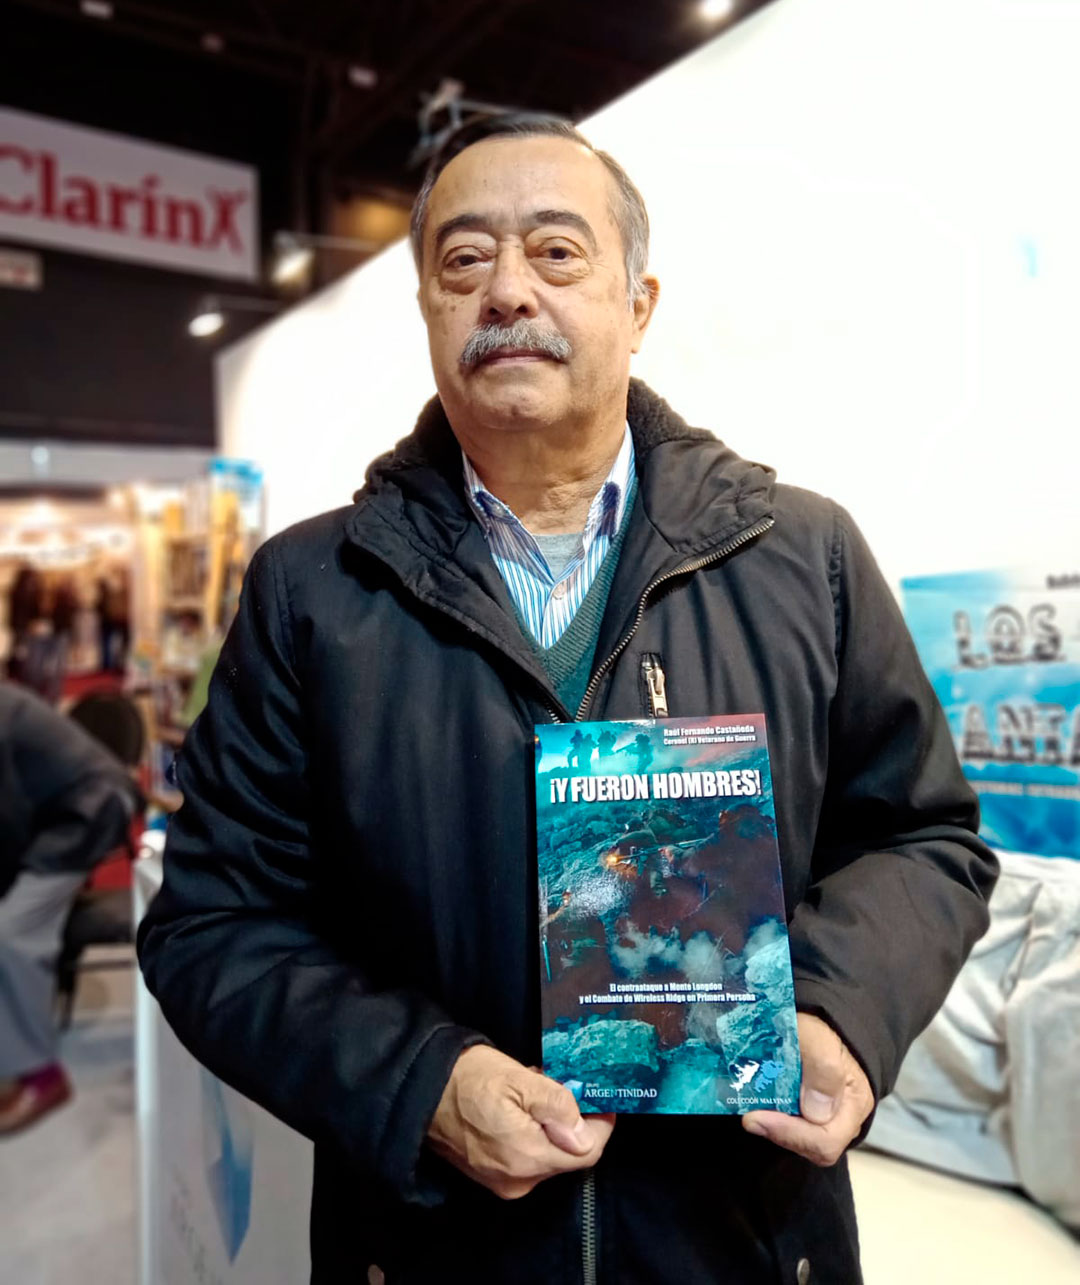 Raúl Fernando Castañeda y su libro "¡Y fueron hombres!"